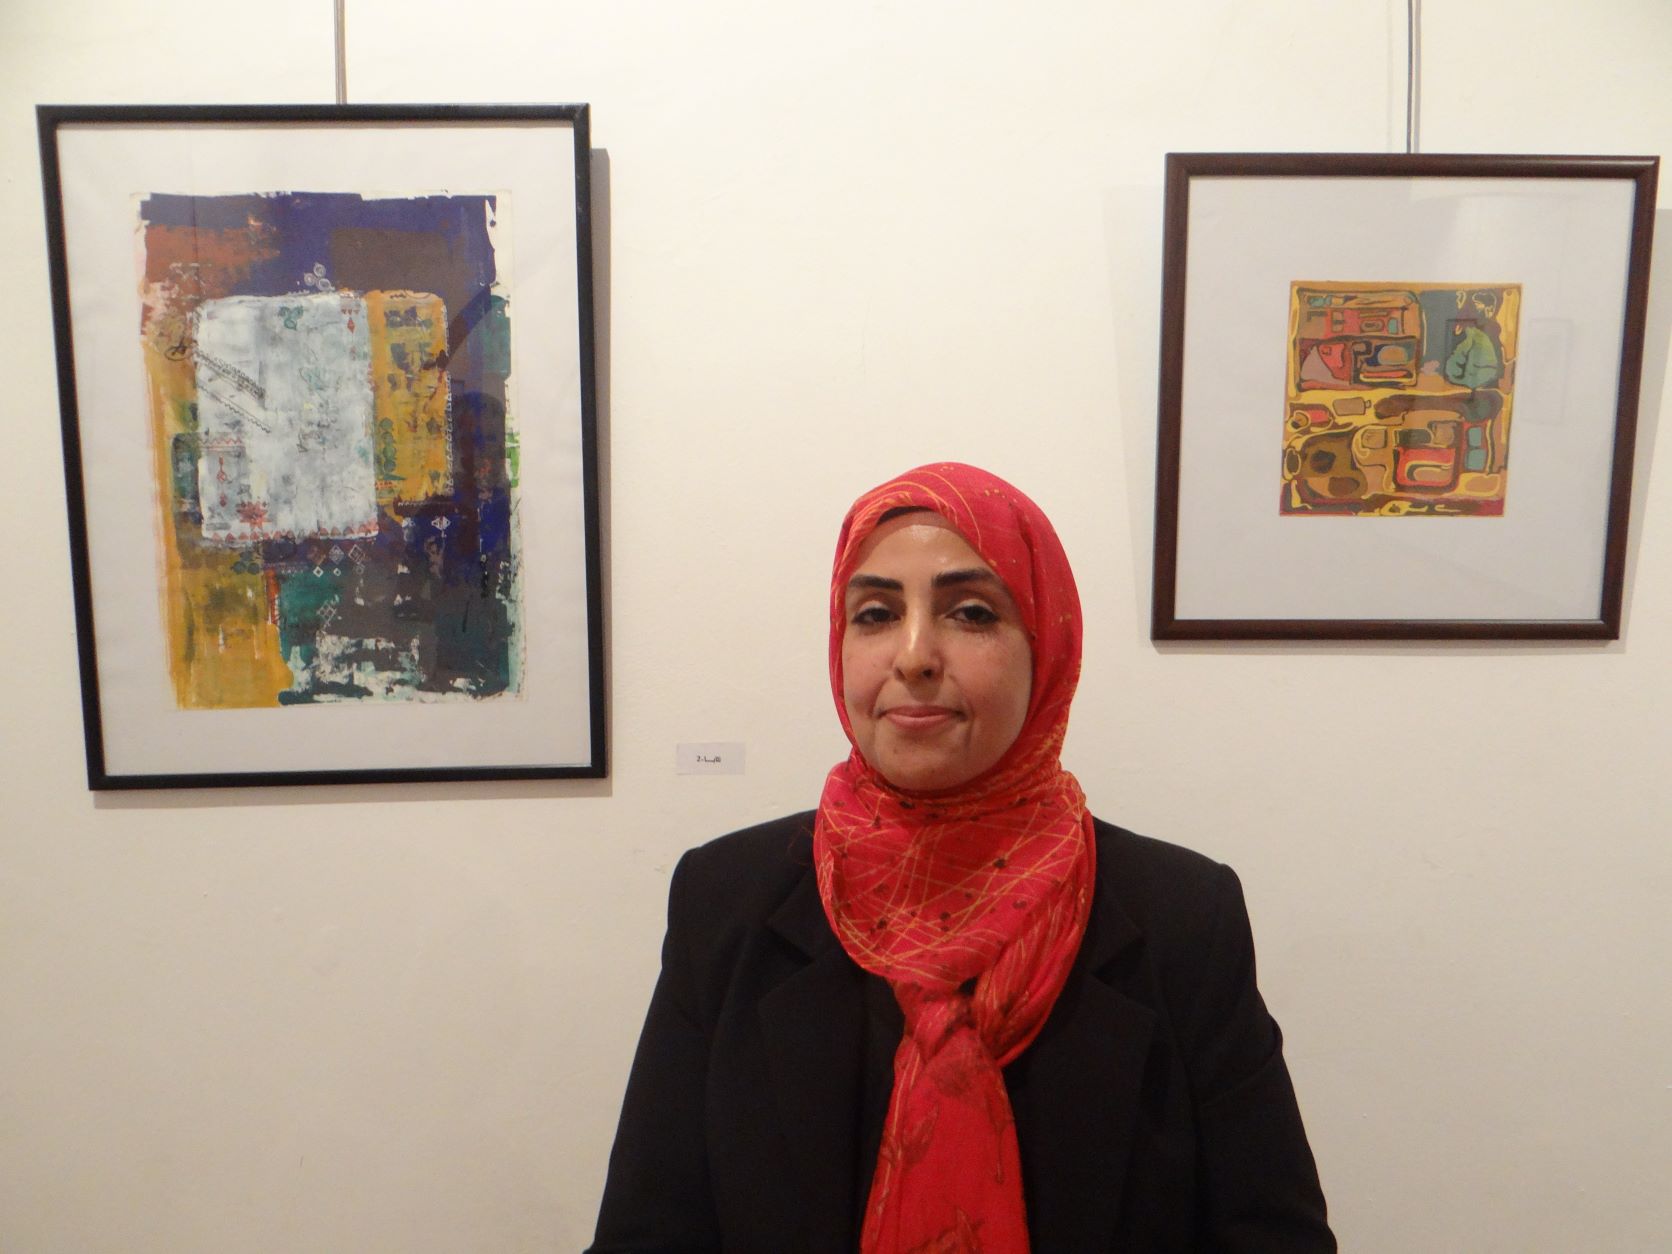  إفتتاح المعرض الفني "توشّى" للفنانة خديجة احمد الفرجاني